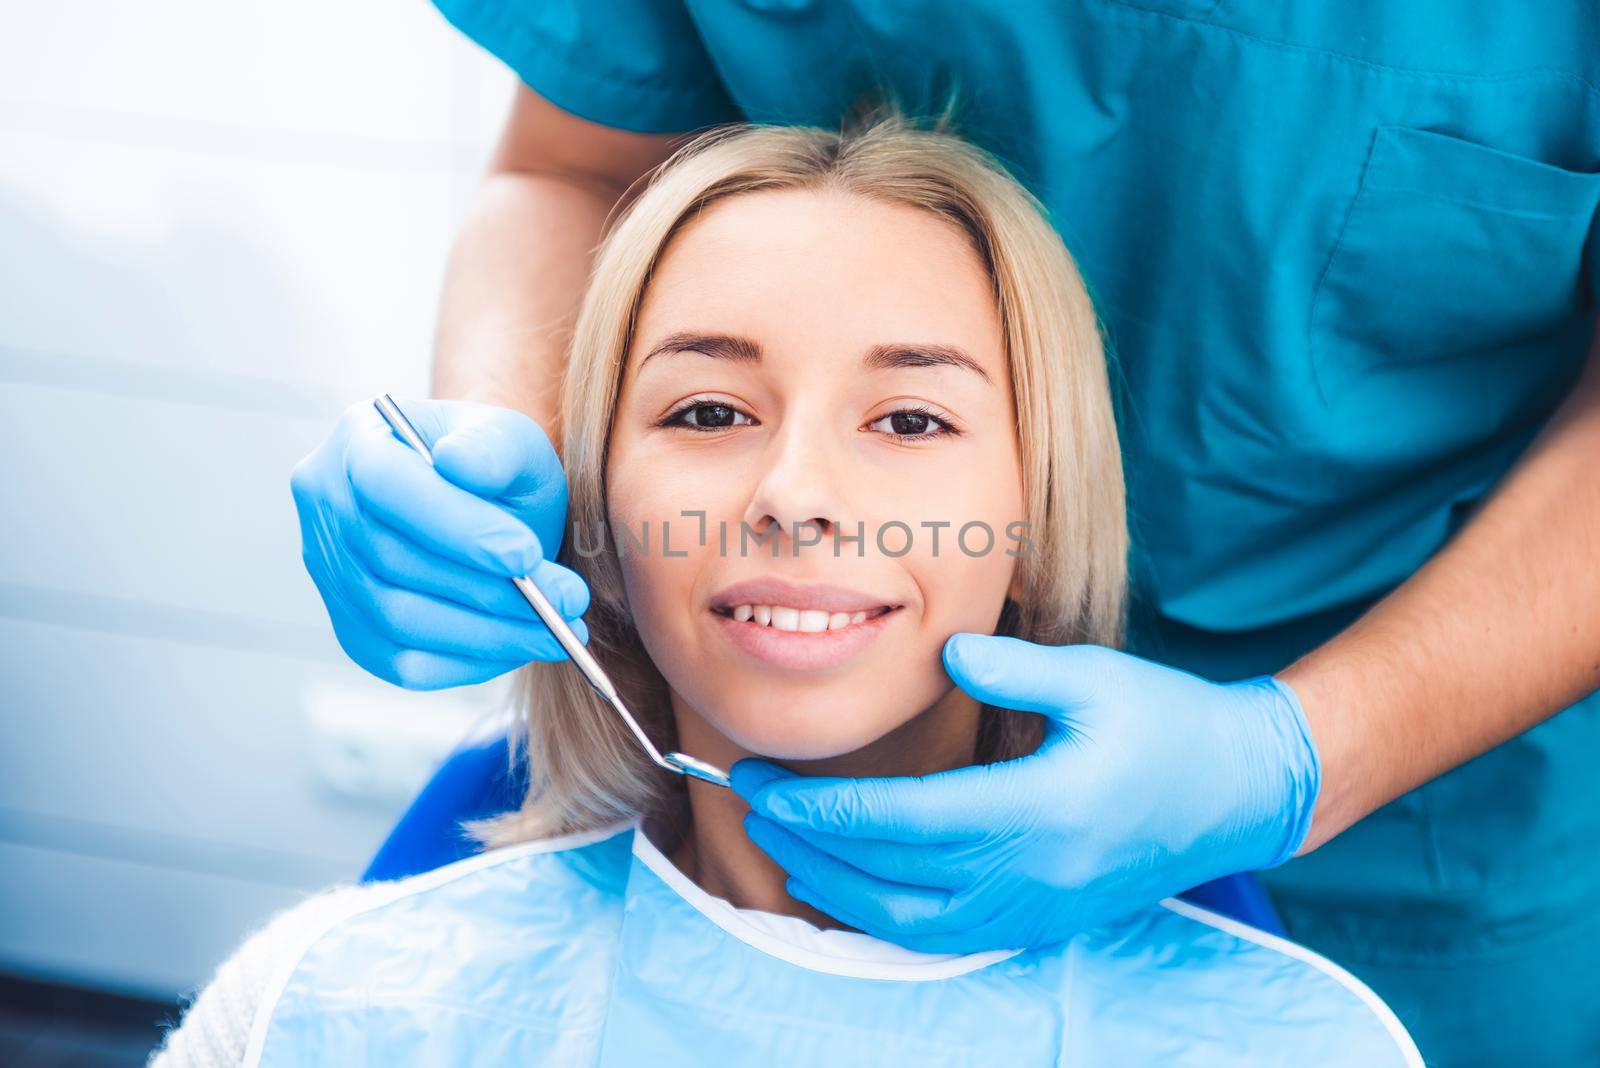 Dentist examinating girl by GekaSkr